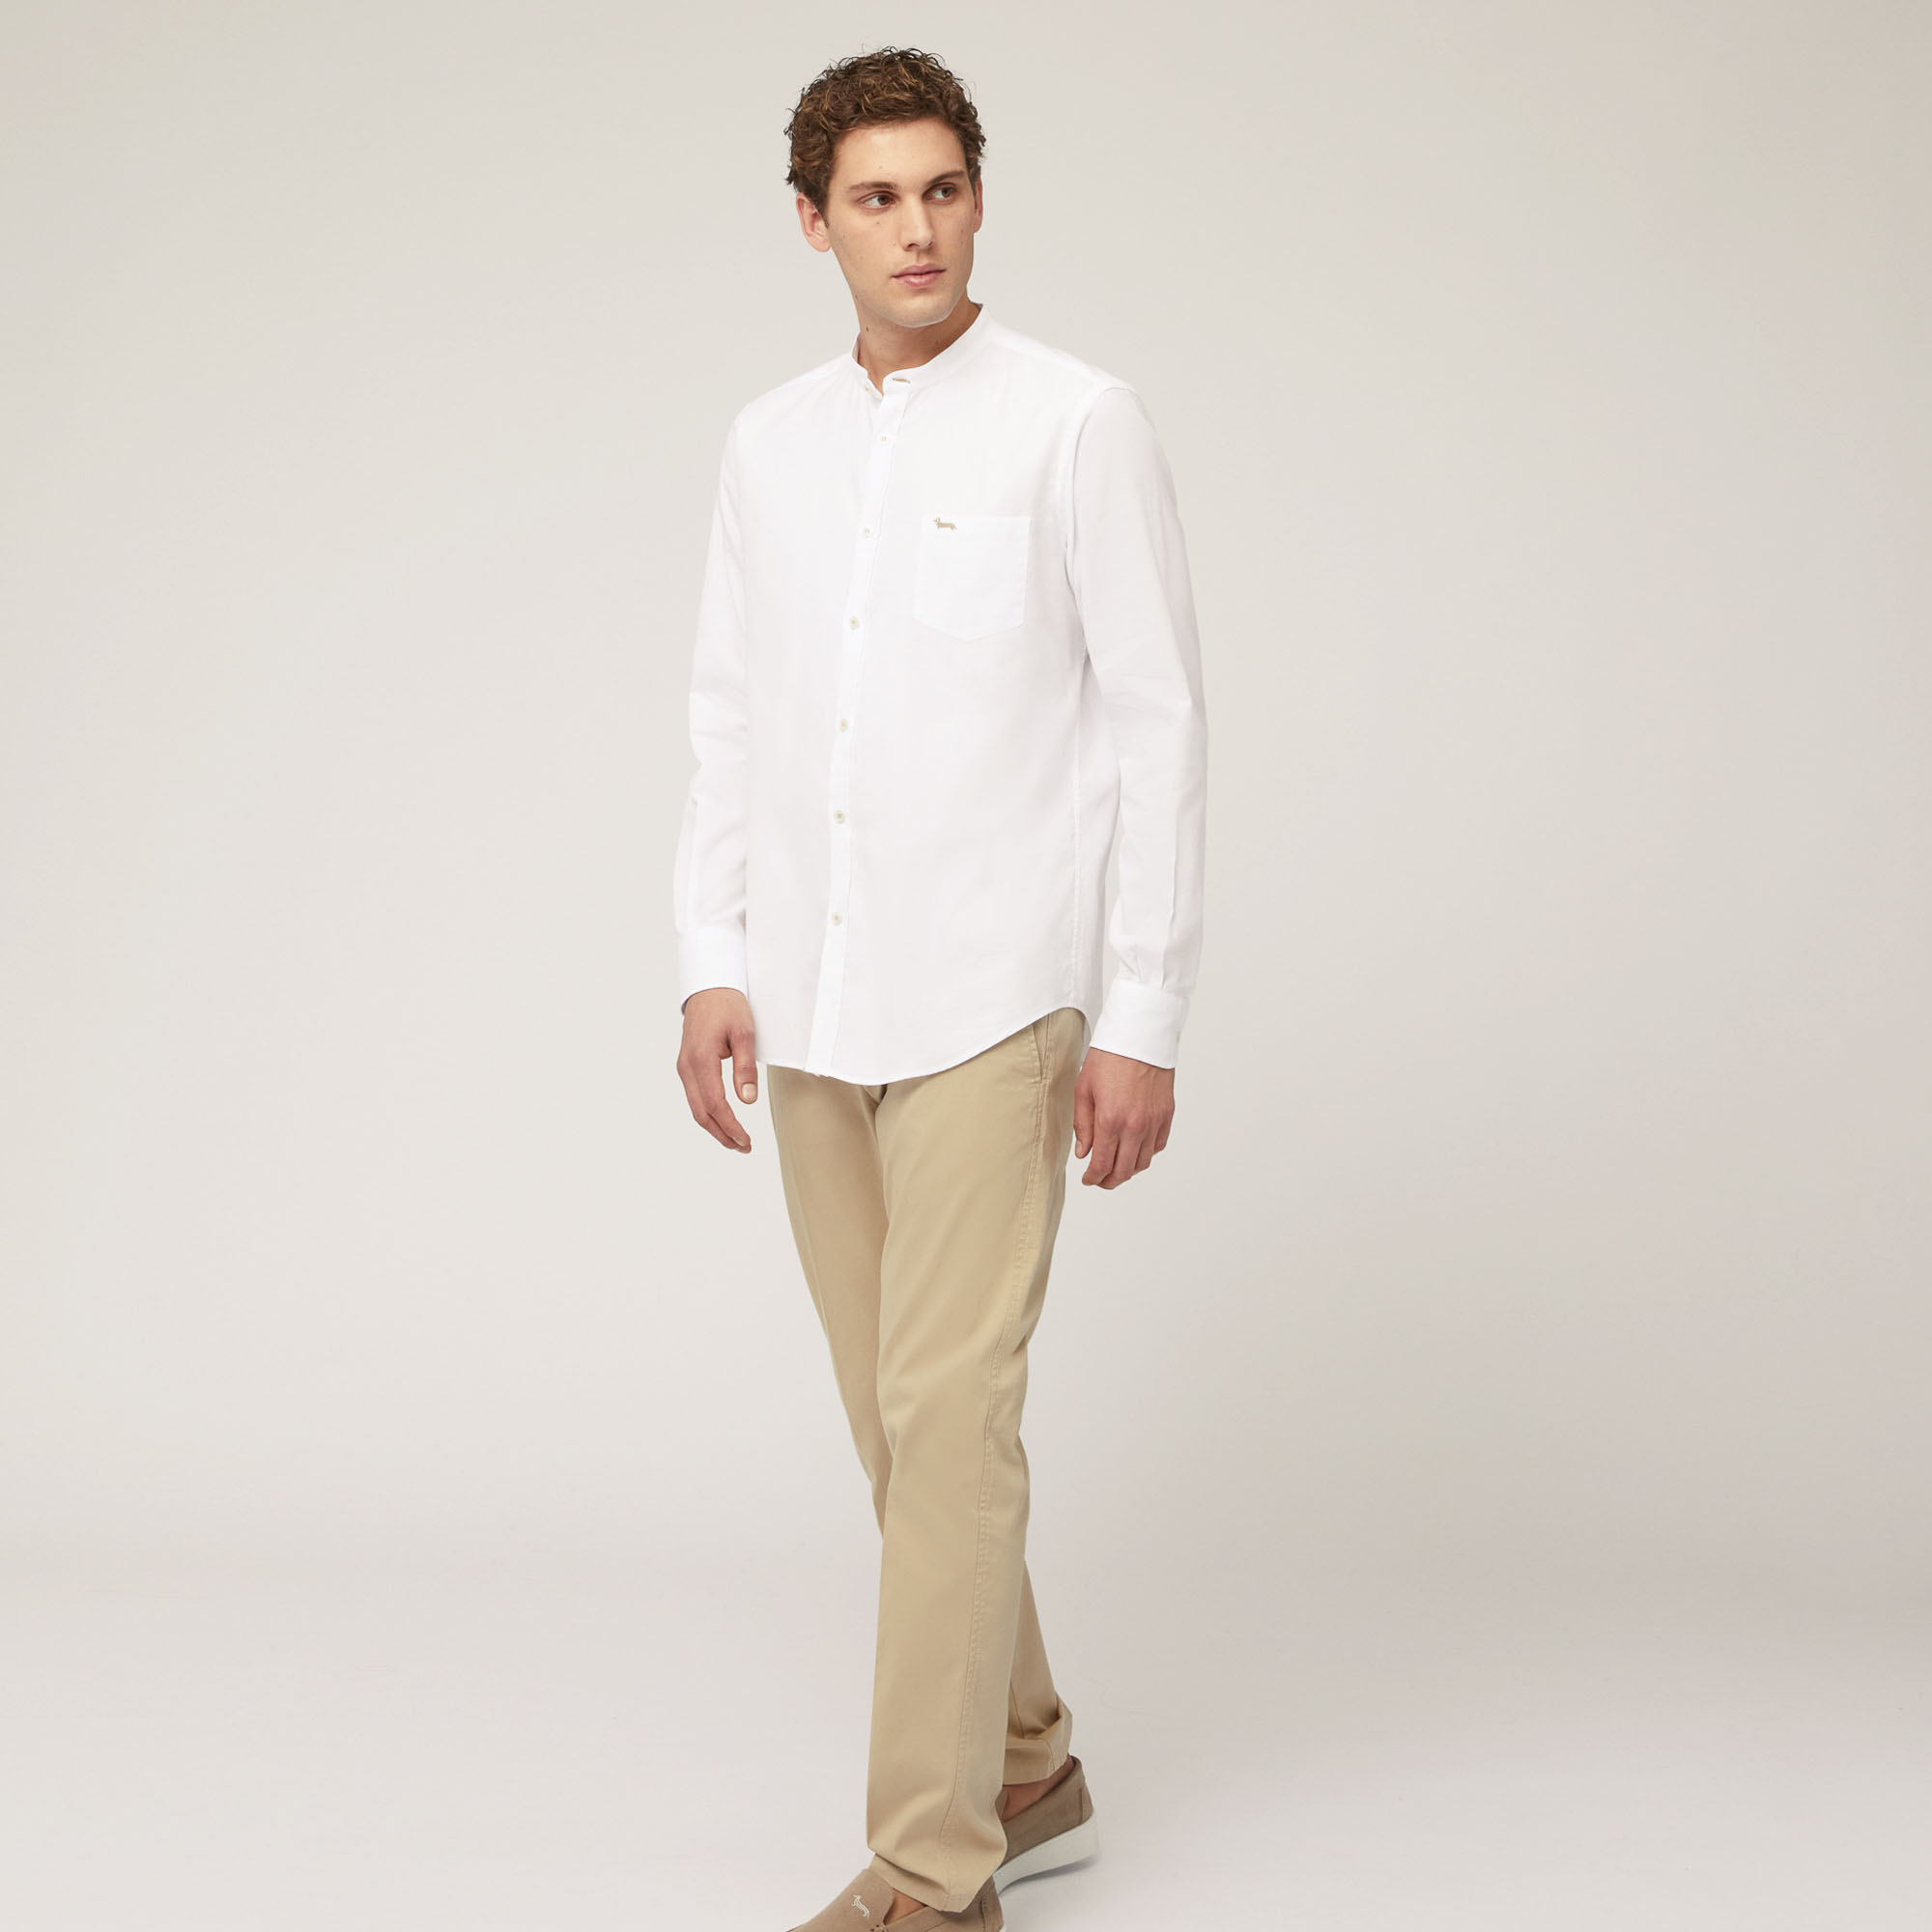 Hemd aus Baumwollkettengewirk mit Stehkragen und Brusttasche, Weiß, large image number 3